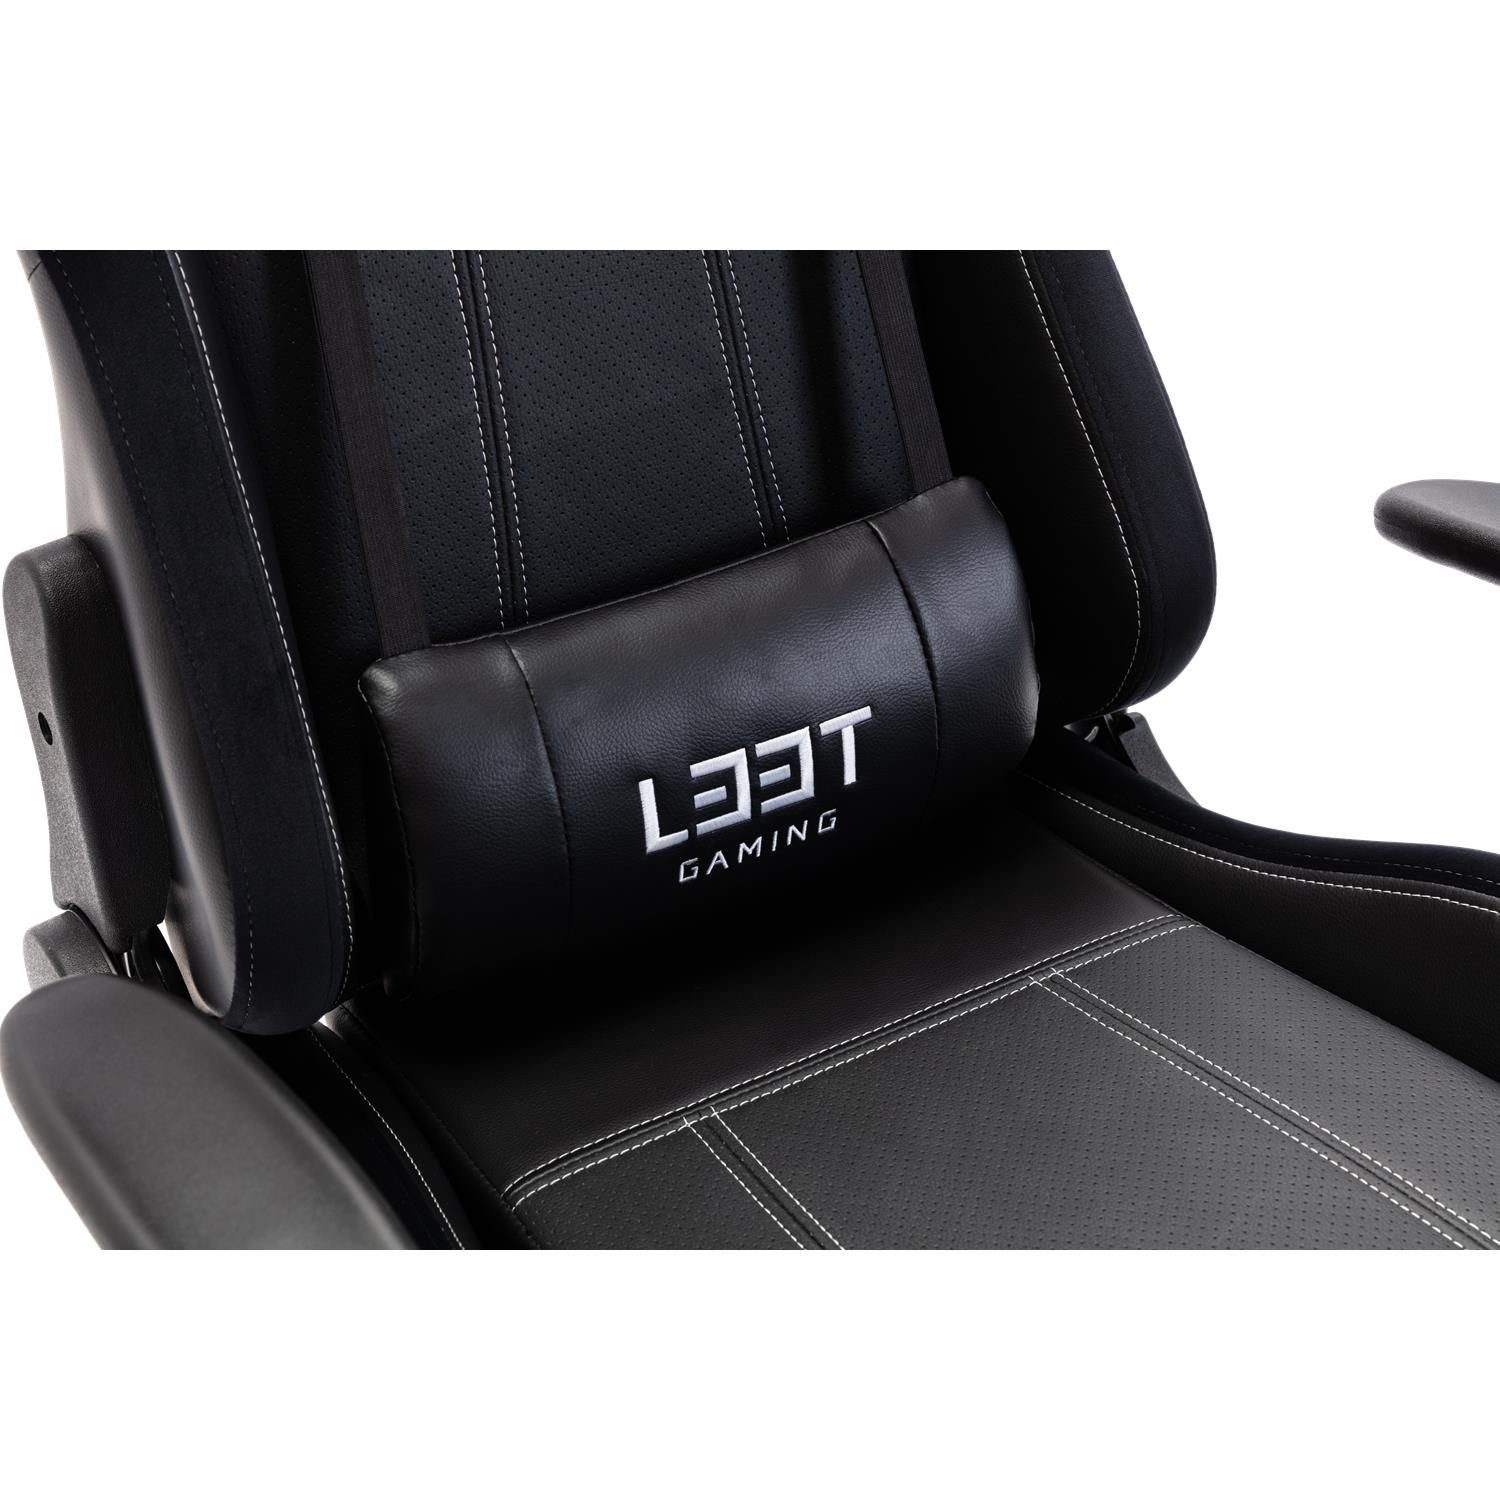 belastbar Stuhl Evolve L33T neigbar, / Gaming Set), Armlehne Büro-Stuhl 120 mit höhenverstellbar, kg (kein Gaming-Stuhl bis